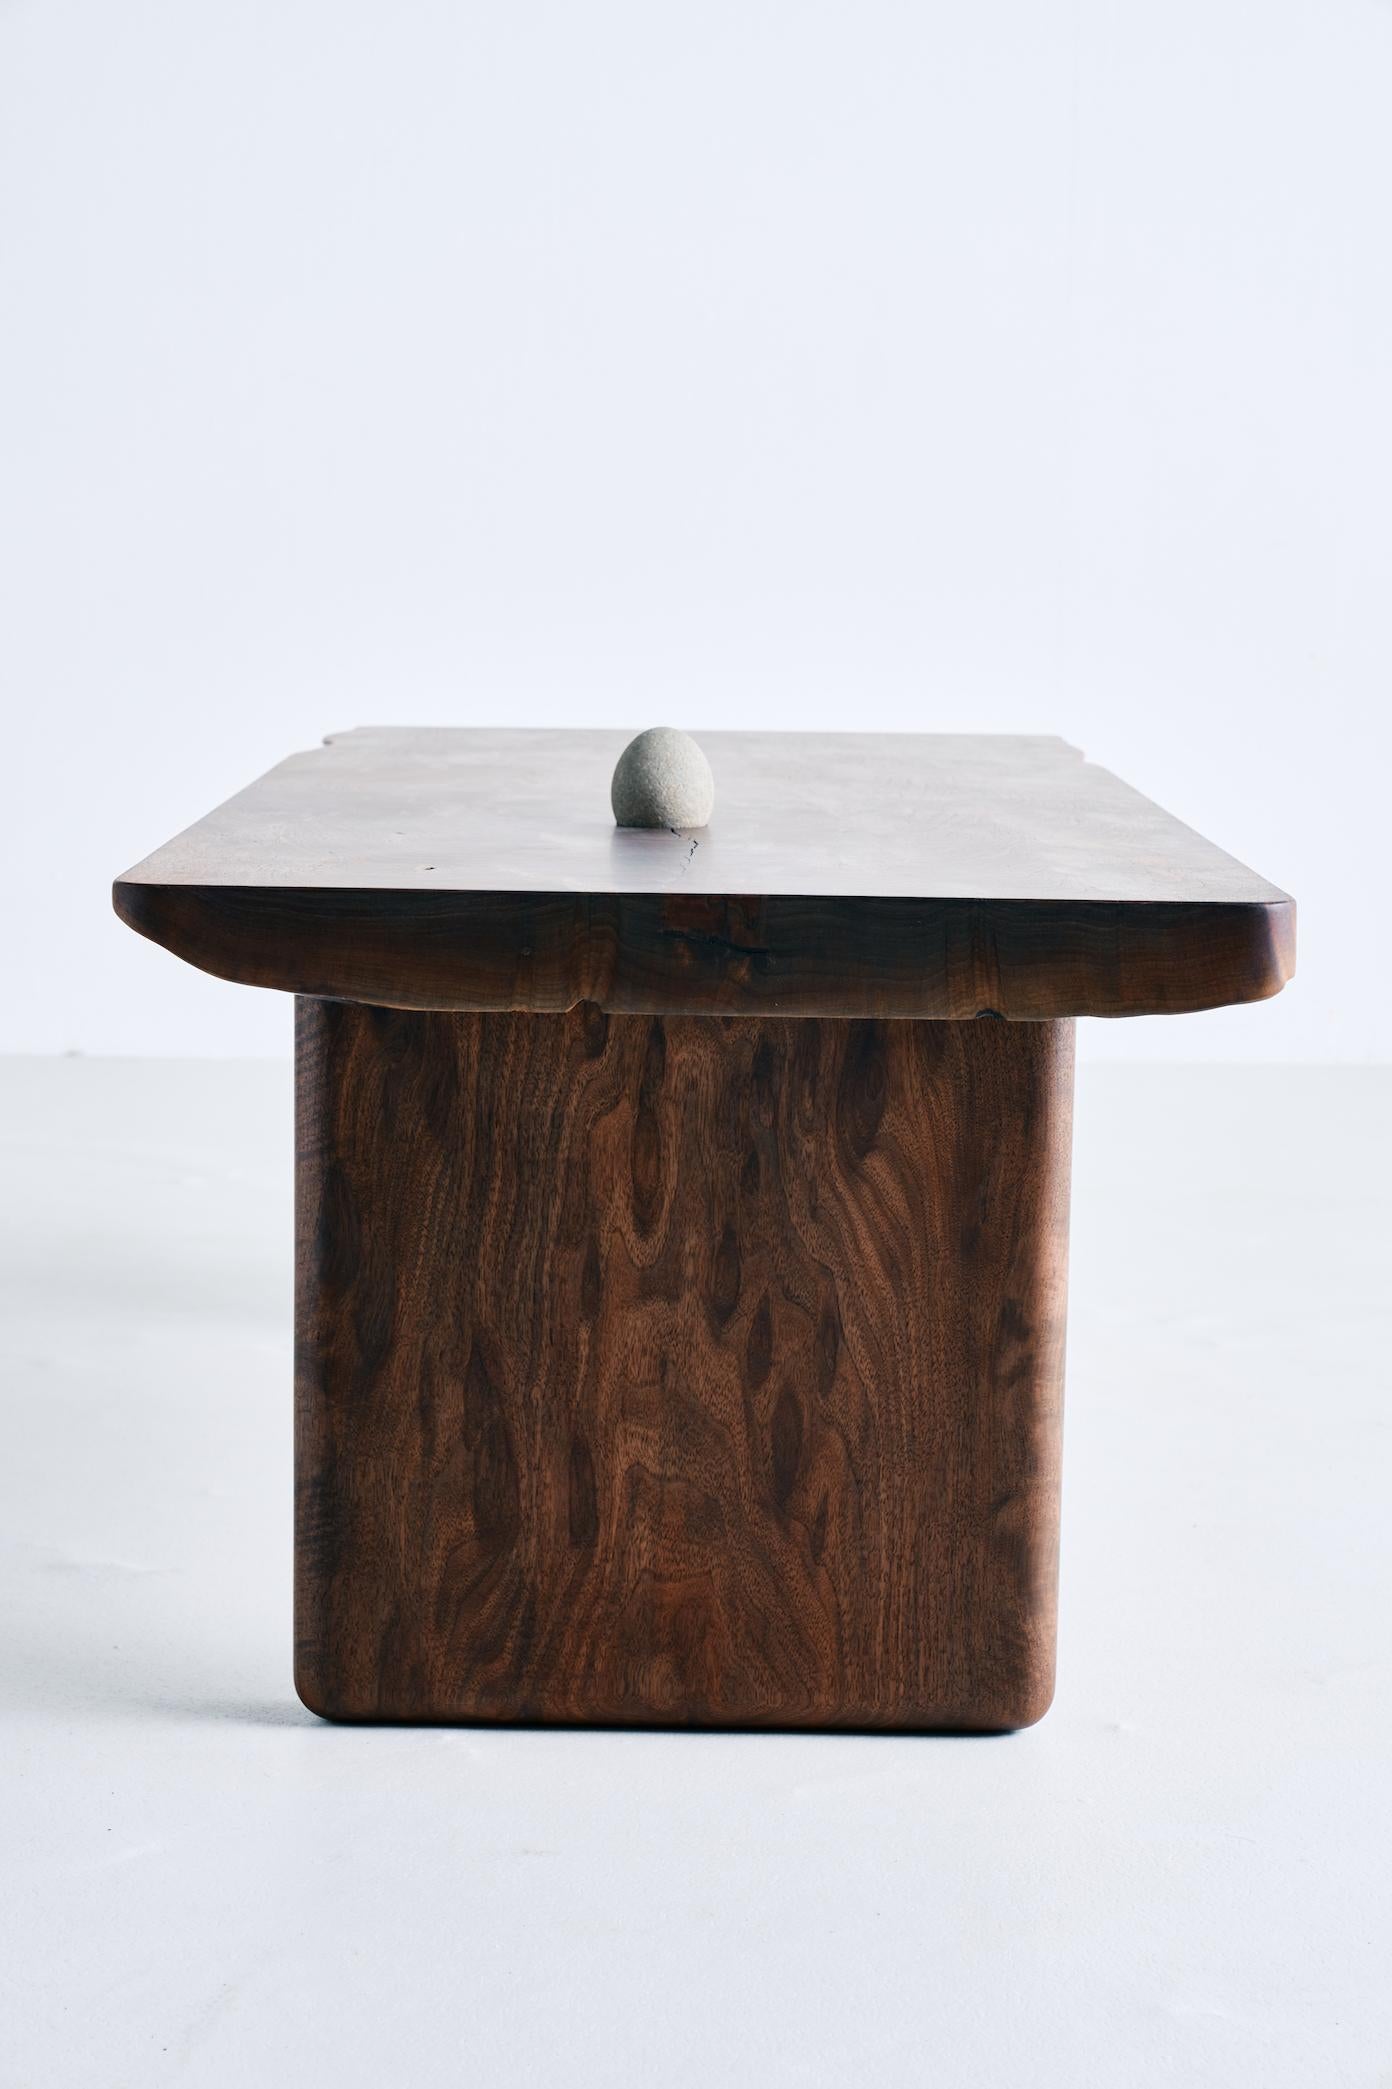 La table basse Chasm de Brian Grasela a été fabriquée à partir d'une seule plaque de noyer noir de l'Oregon. Une pierre de plage trouvée à San Diego, en Californie, est incorporée dans le plateau, ainsi qu'une incrustation de ronce de bronze coulée